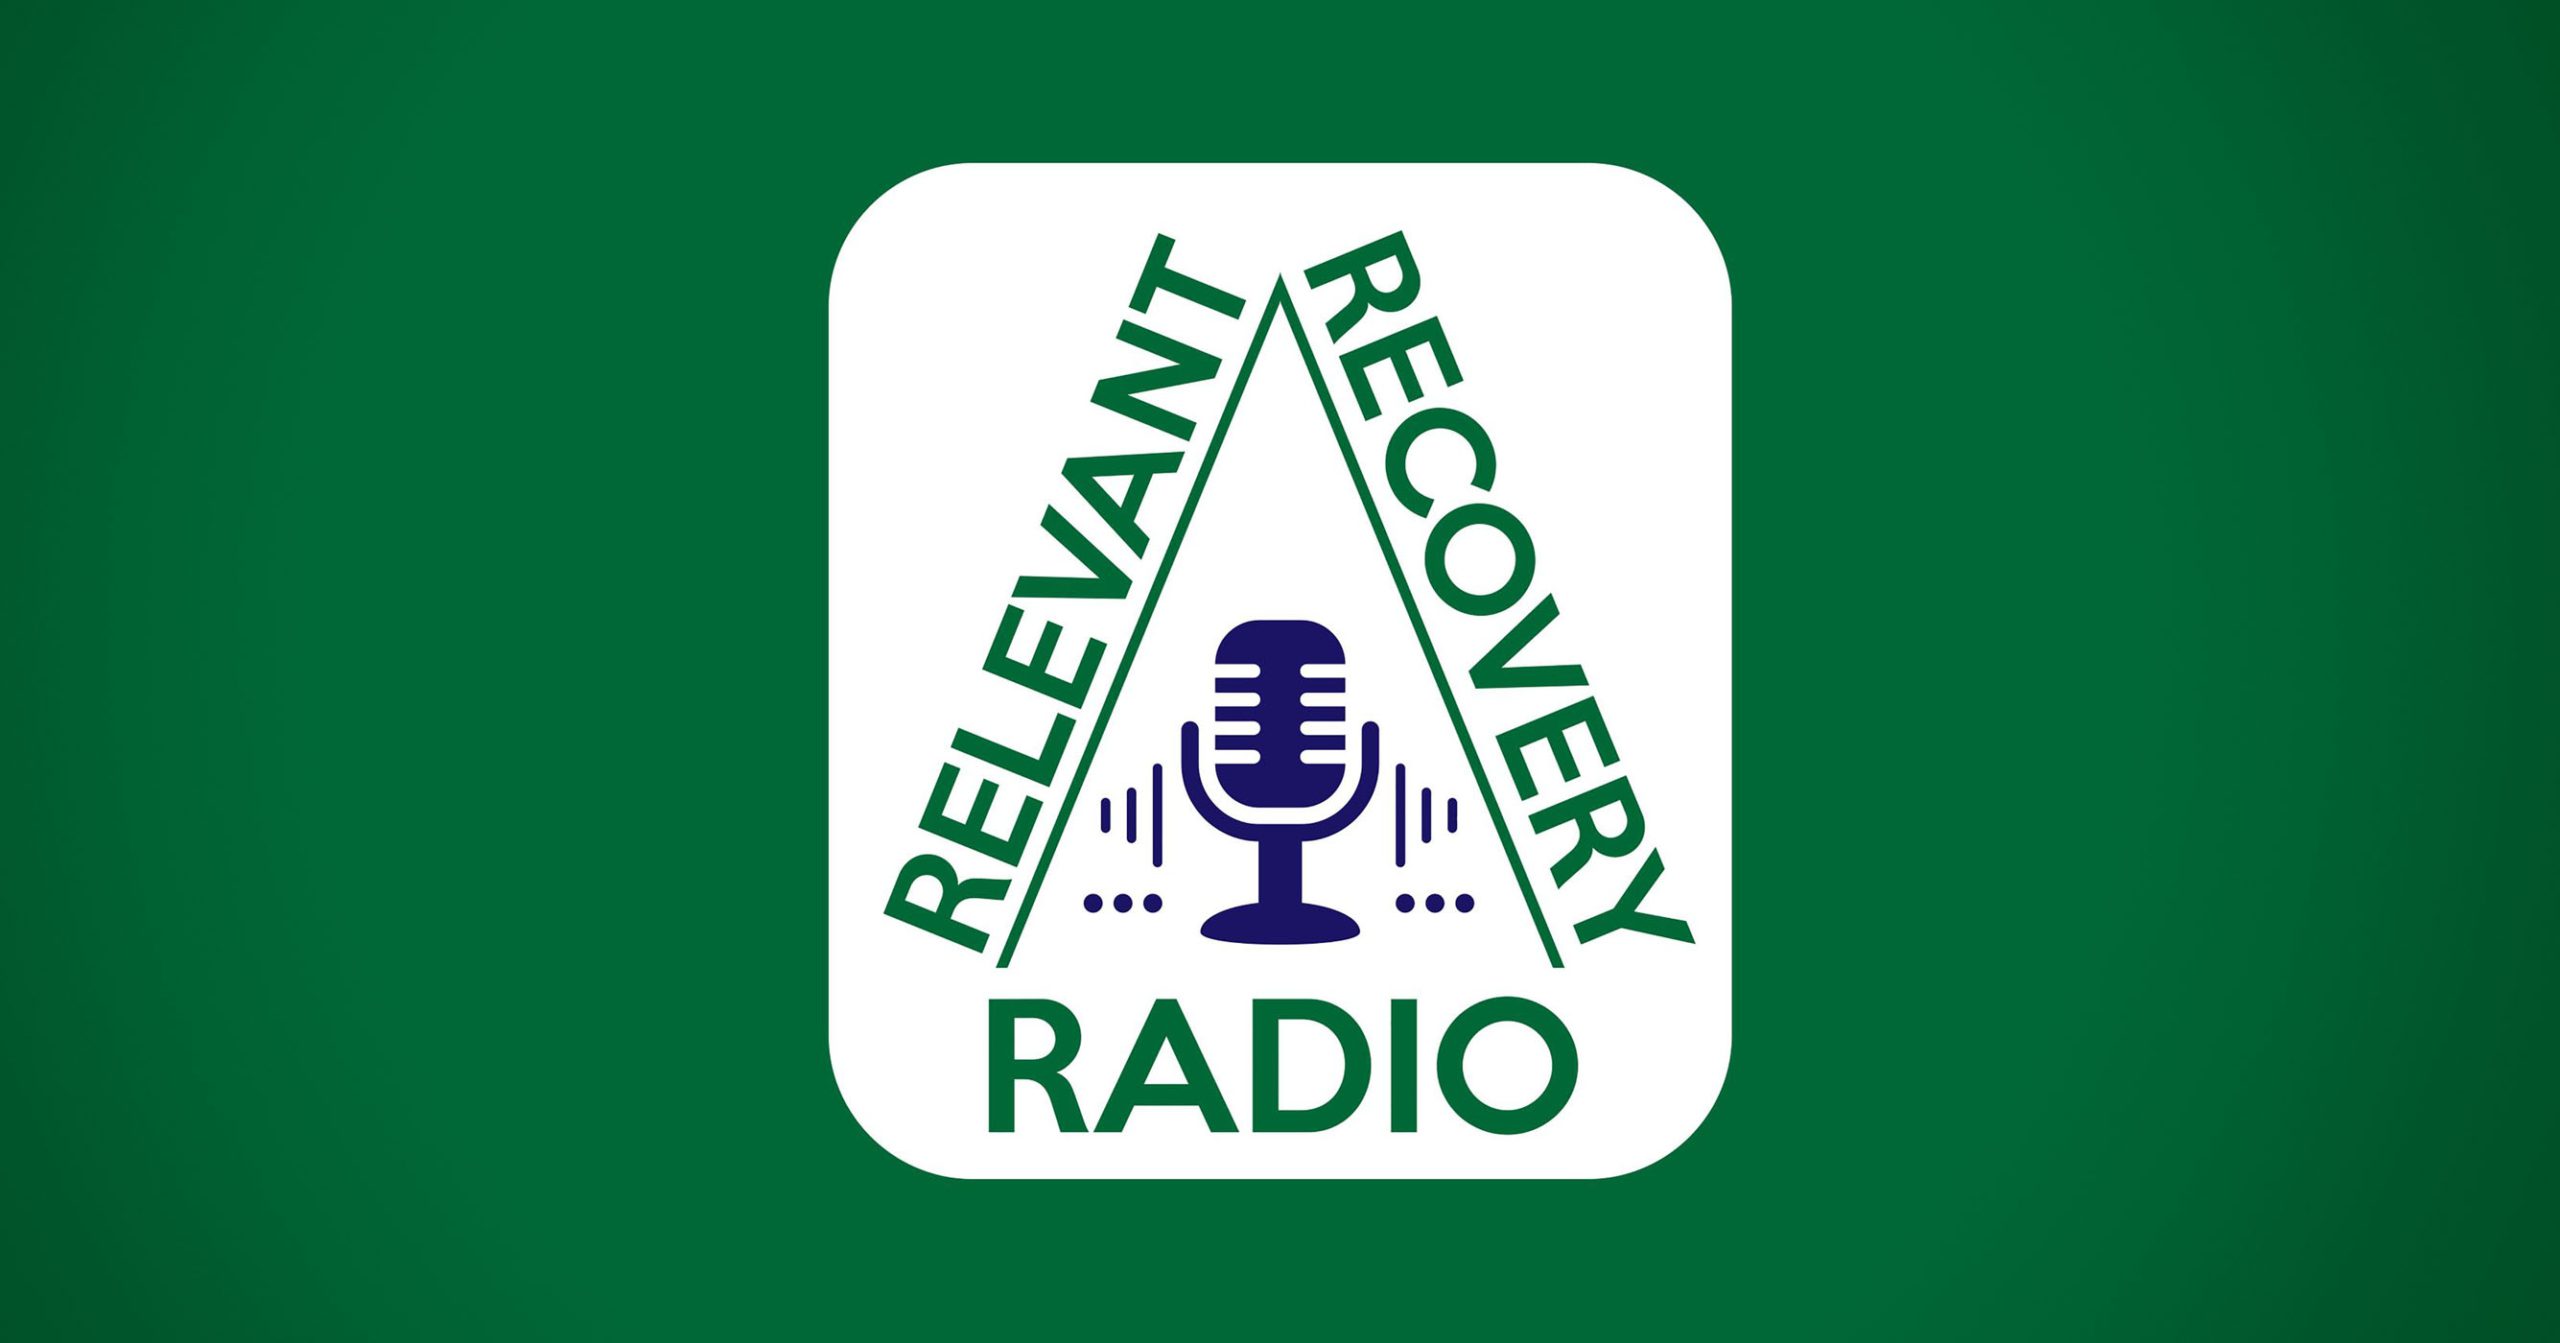 Relevant Recovery Radio